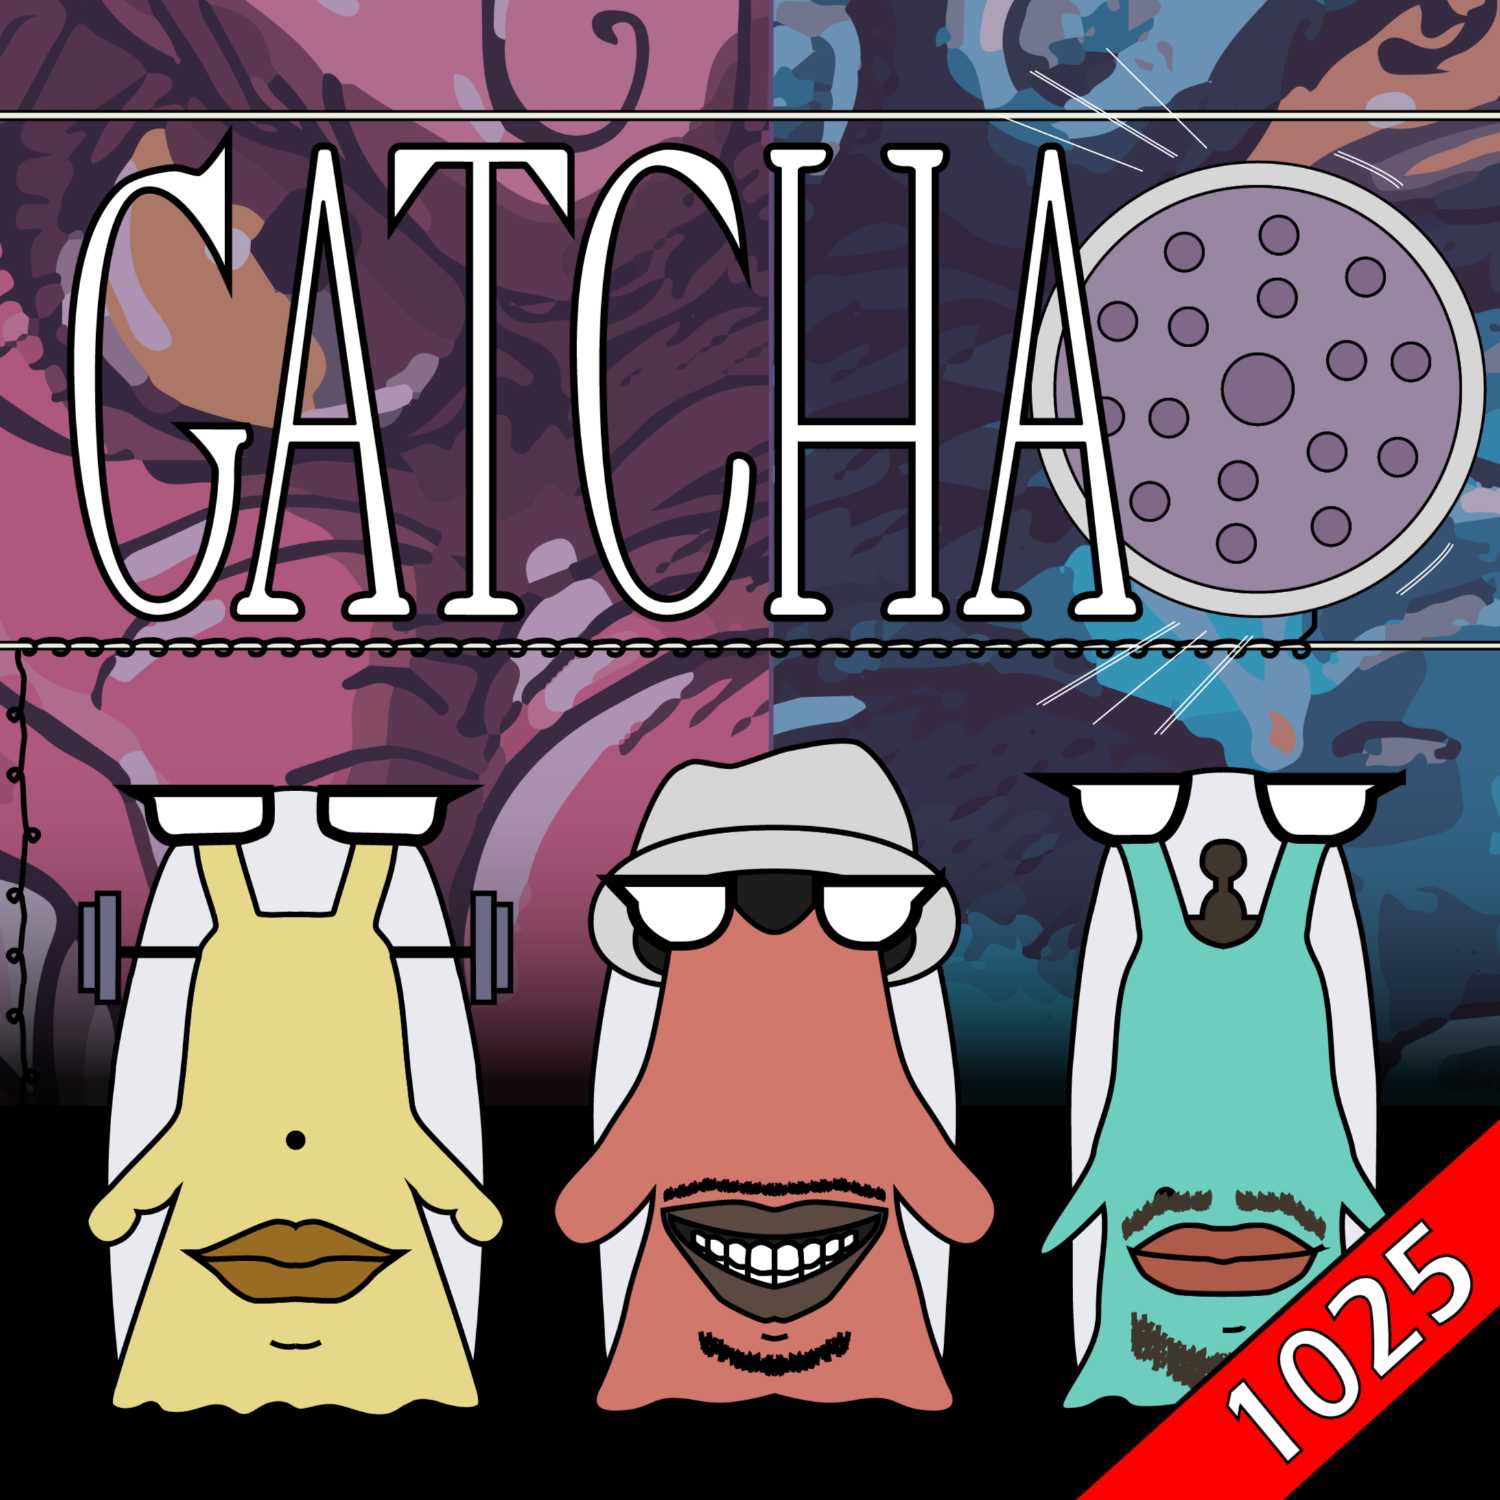 Le Retour Luffy et La Rencontre des Dragons - Chapitre 1025 | Gatcha Podcast #31 Review One Piece